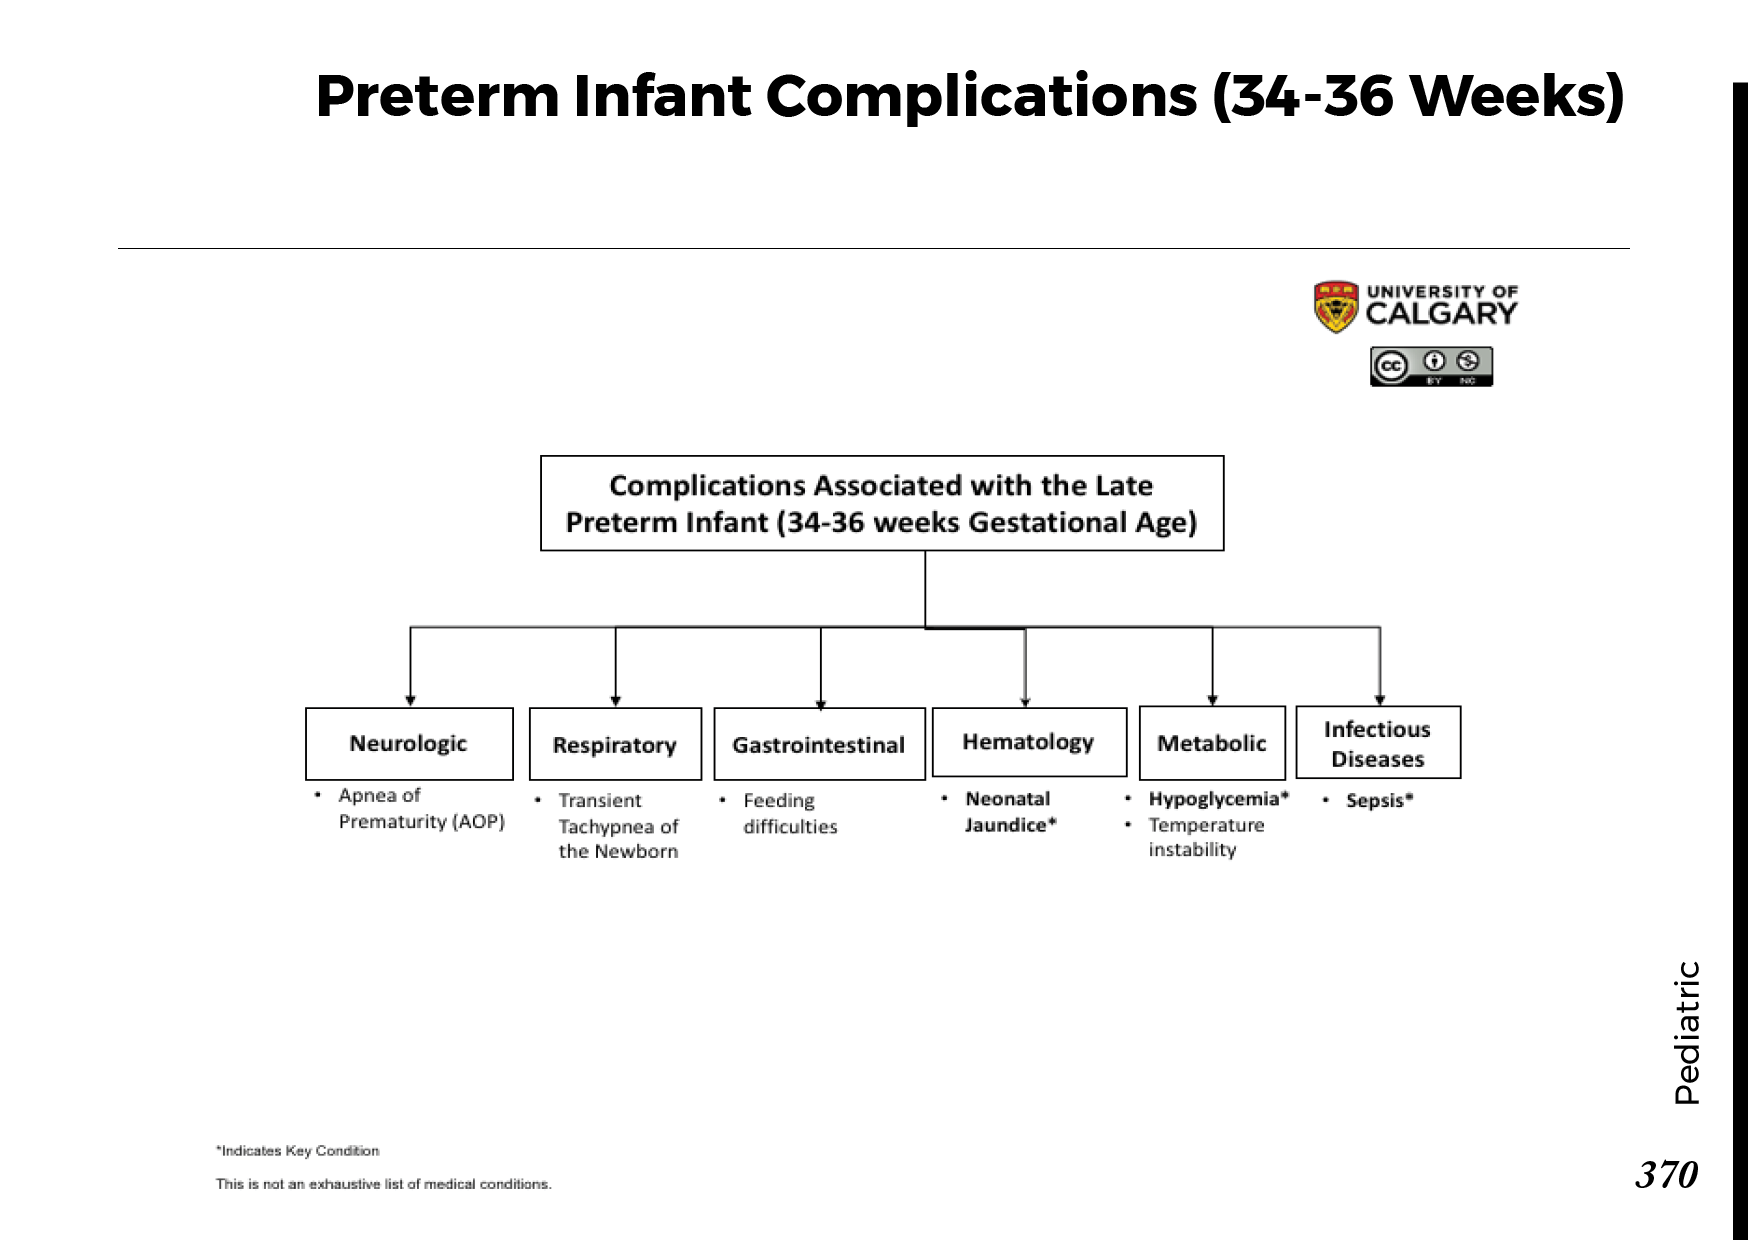 PRETERM INFANT COMPLICATIONS (34-36 WEEKS) Scheme